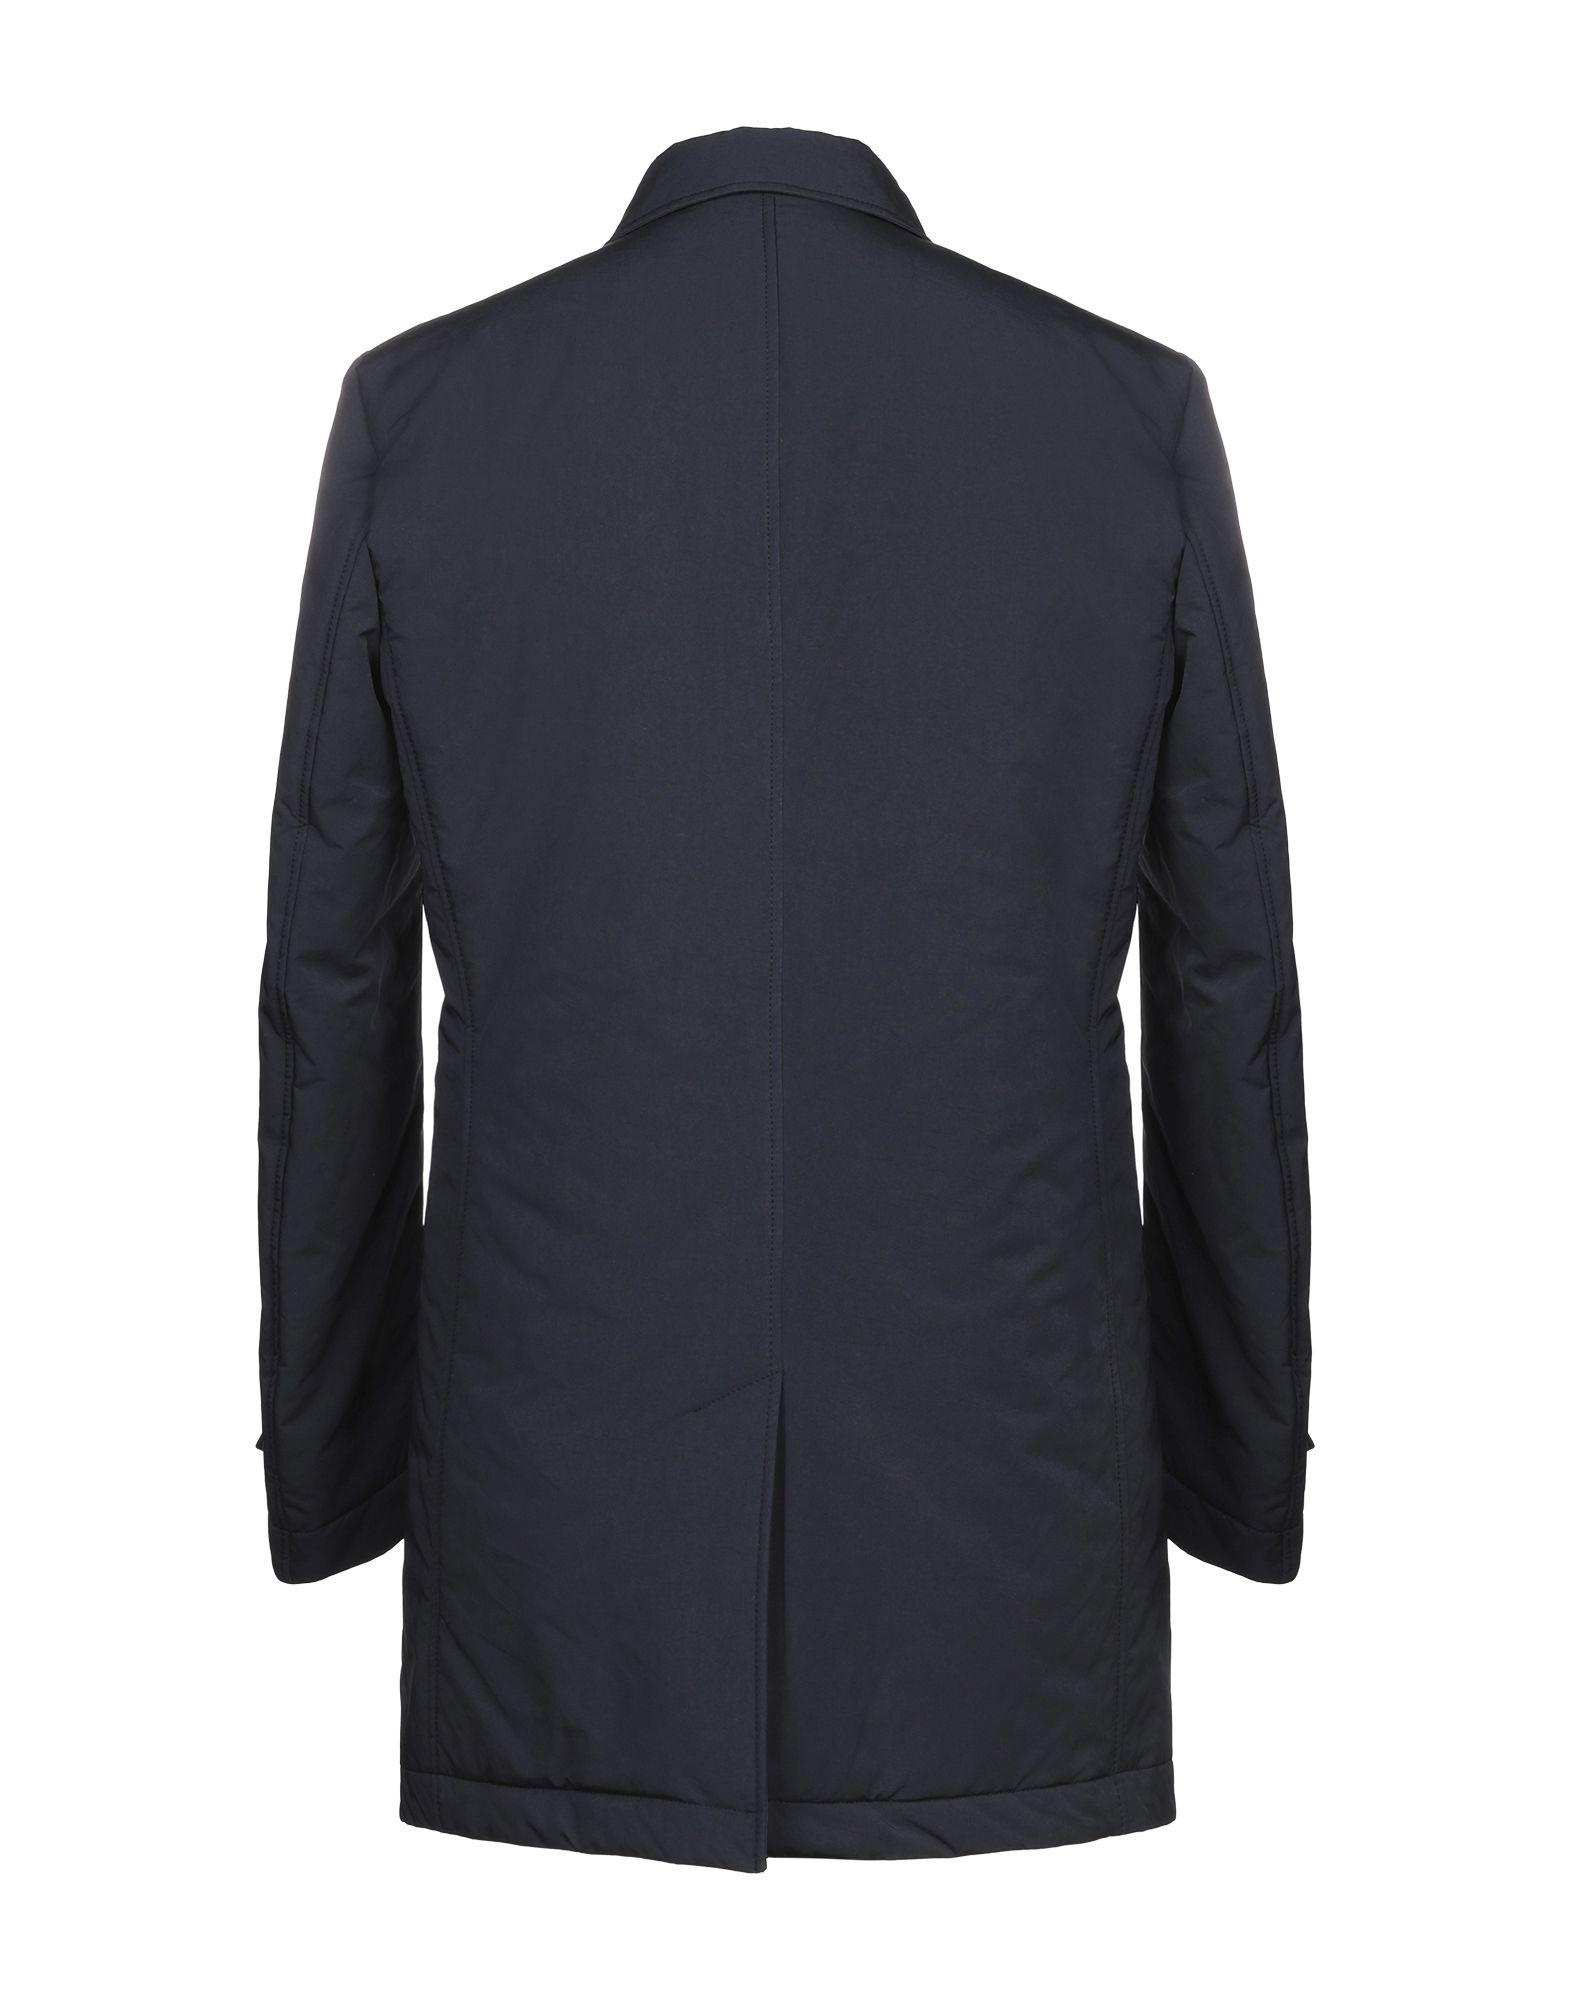 Schneiders Synthetic Jacket in Dark Blue (Blue) for Men - Lyst